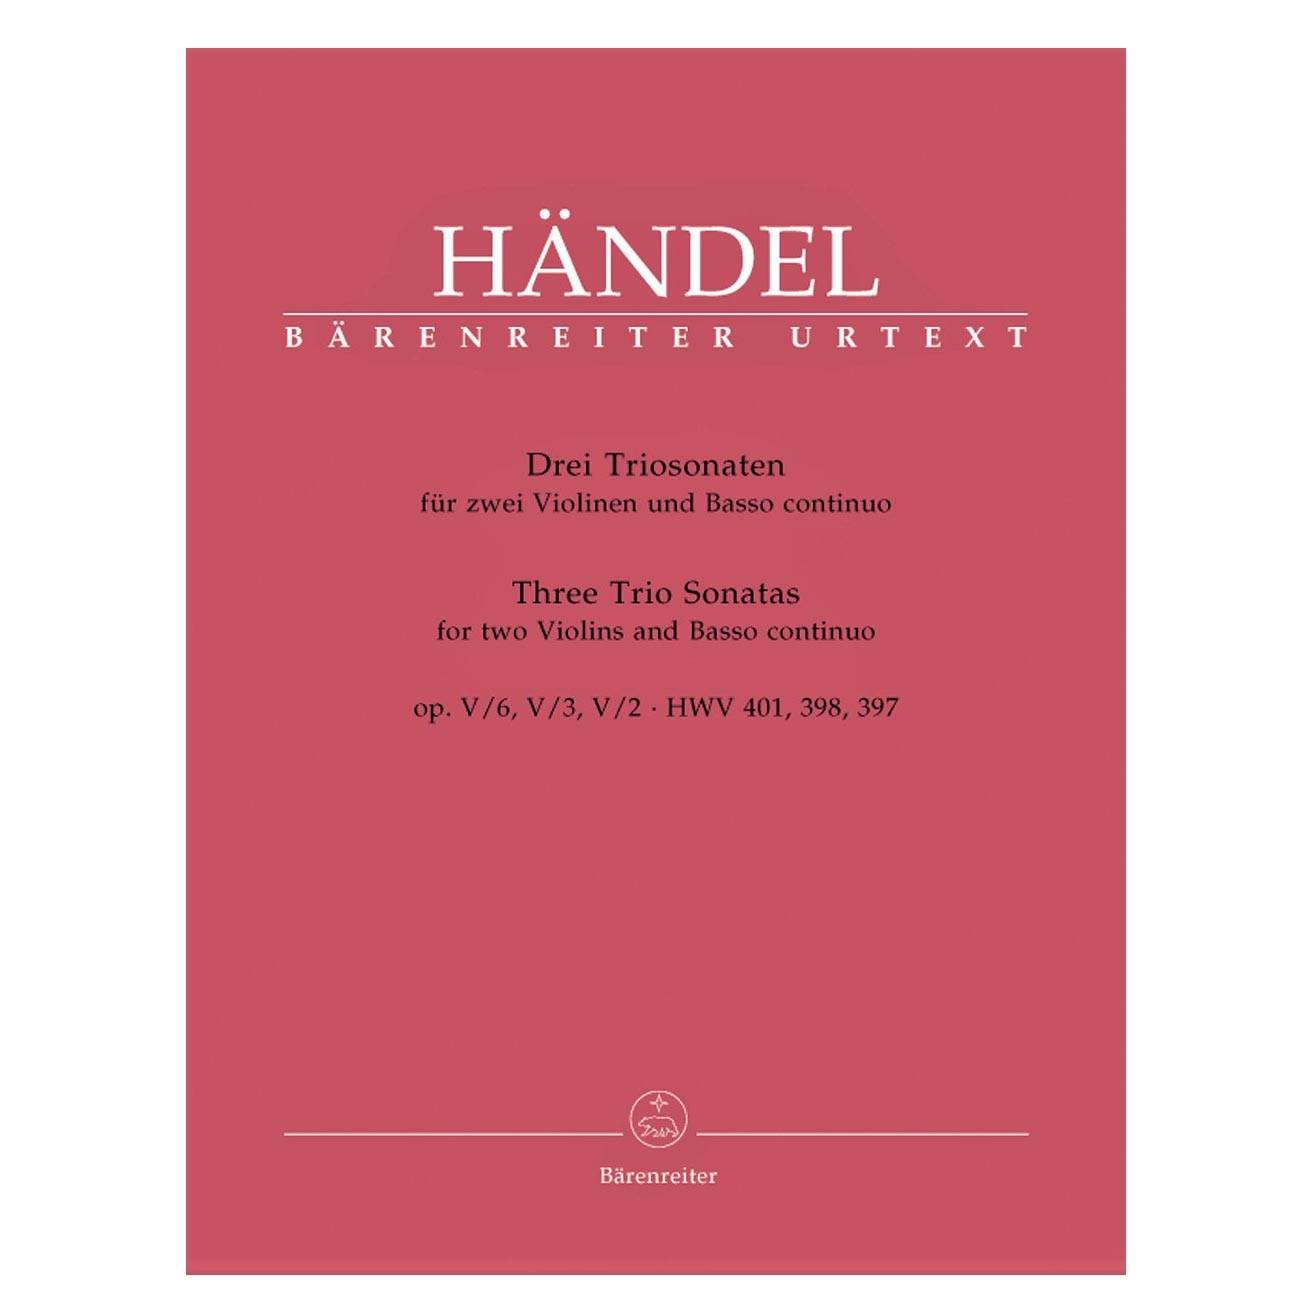 Handel - Three Trio Sonatas For 2 Violins & Basso Continuo